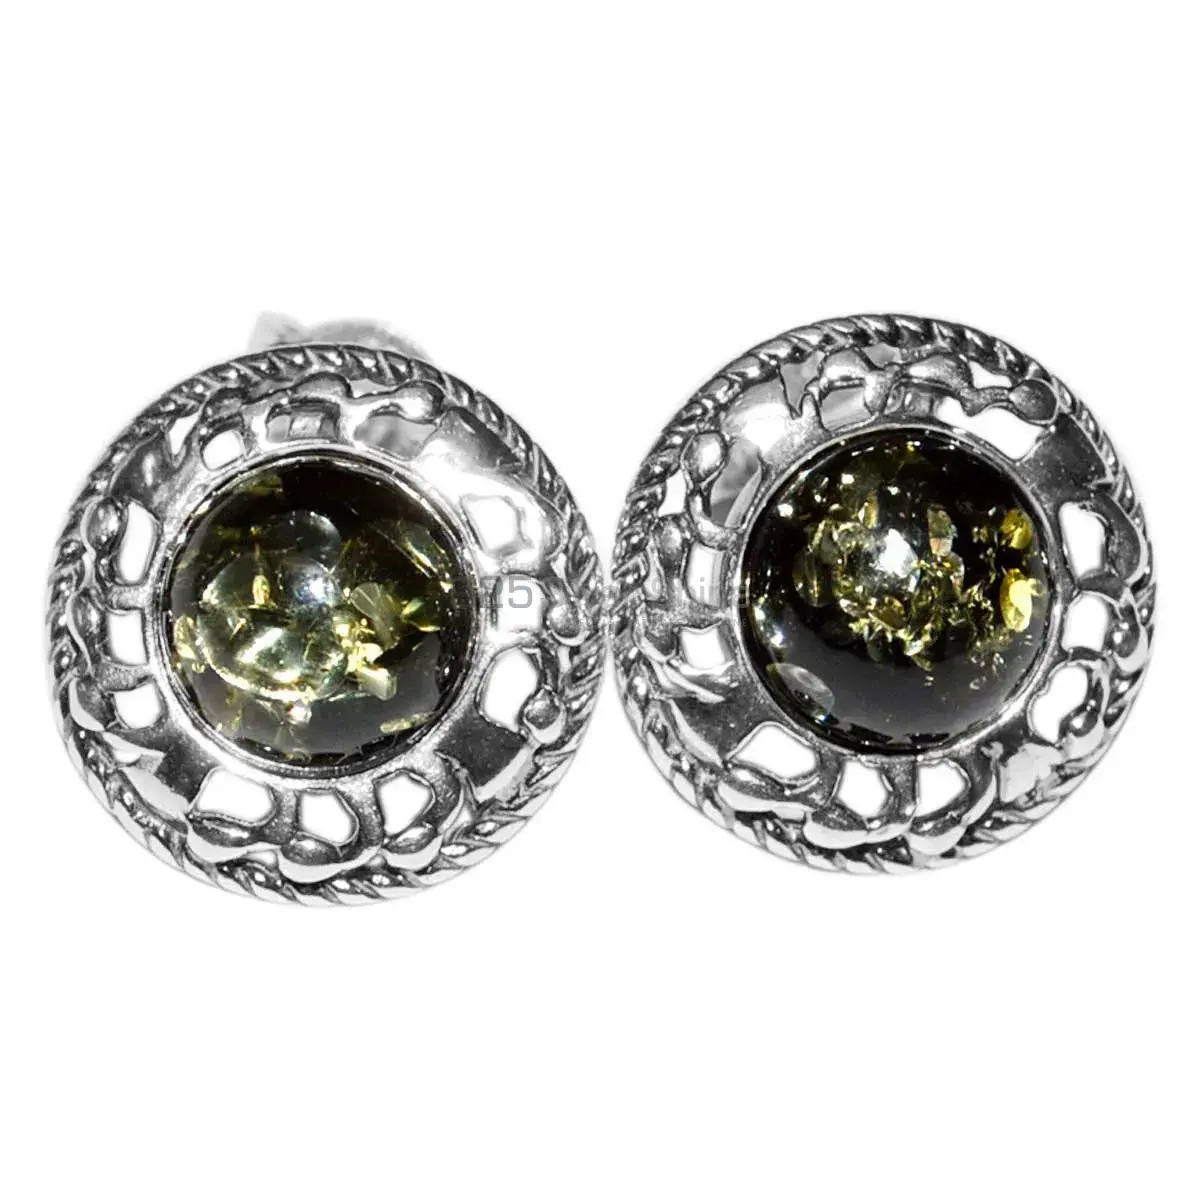 Genuine Turtella Jasper Gemstone Earrings Suppliers In 925 Sterling Silver Jewelry 925SE2923